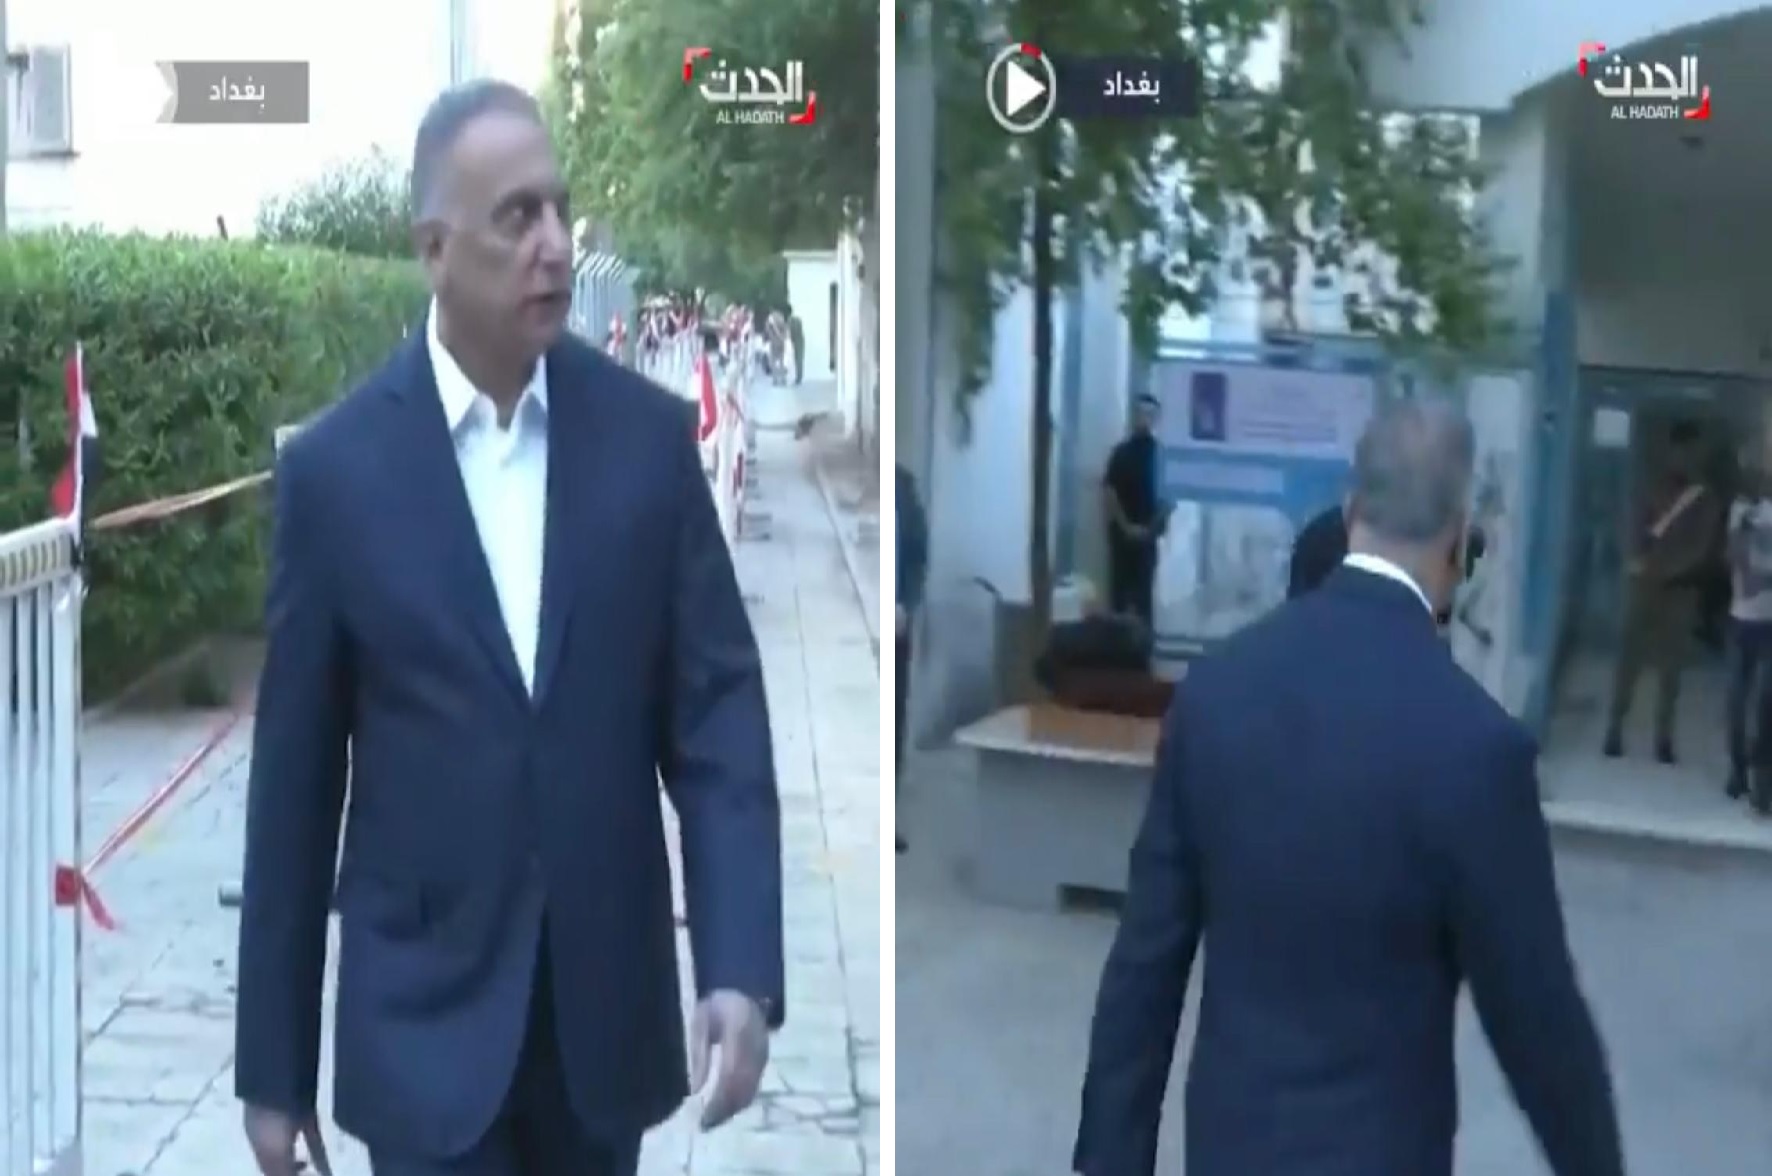 شاهد.. فيديو غريب لتفتيش "الكاظمي" قبل دخوله مركز انتخابي في بغداد يثير الجدل بين العراقيين